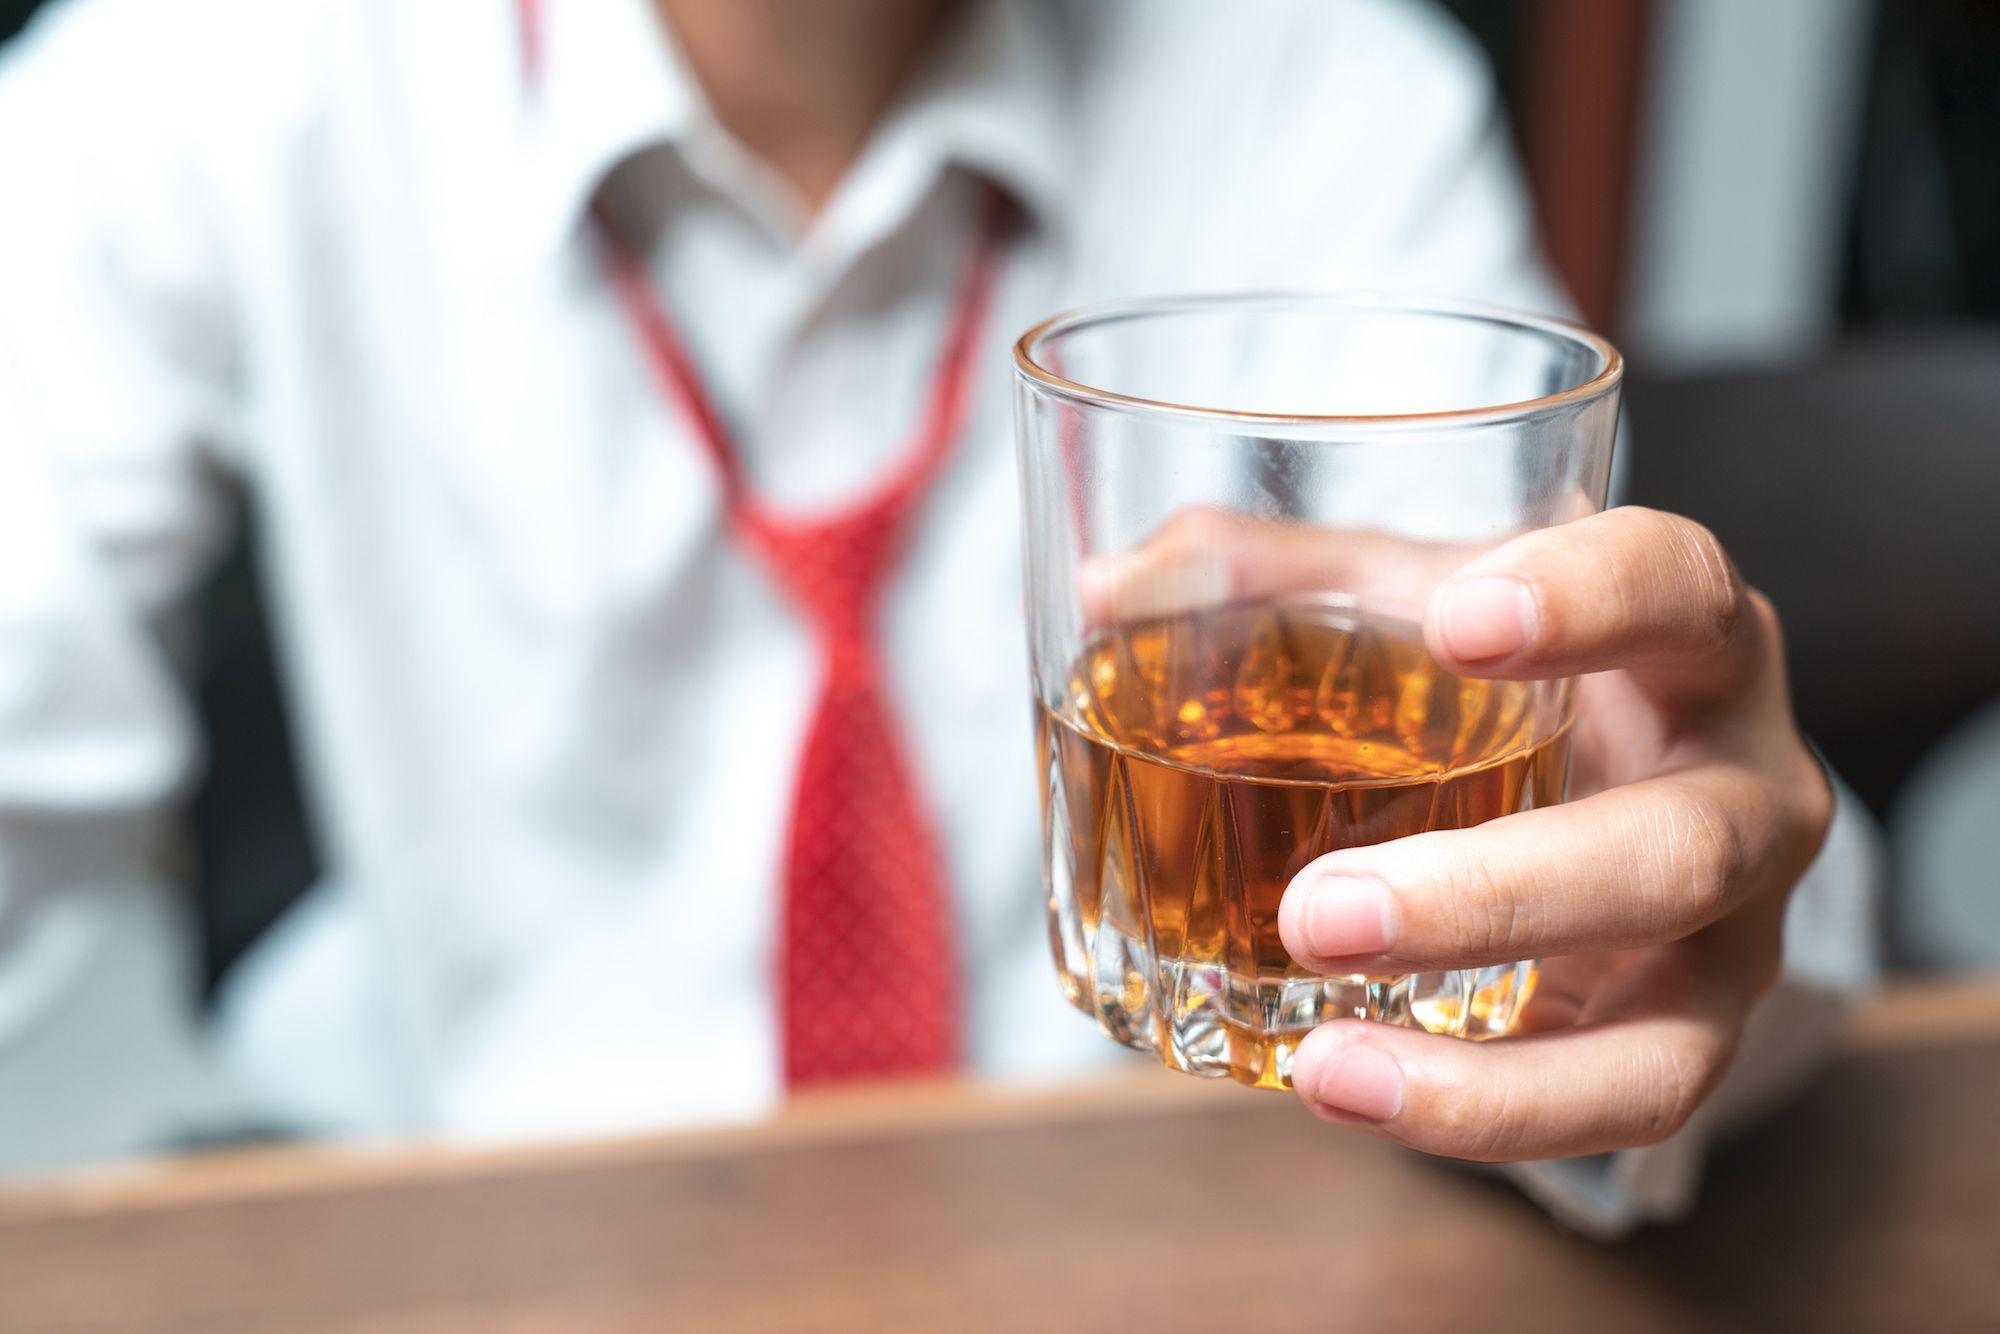 Питье для снятия стресса может усугубить проблему